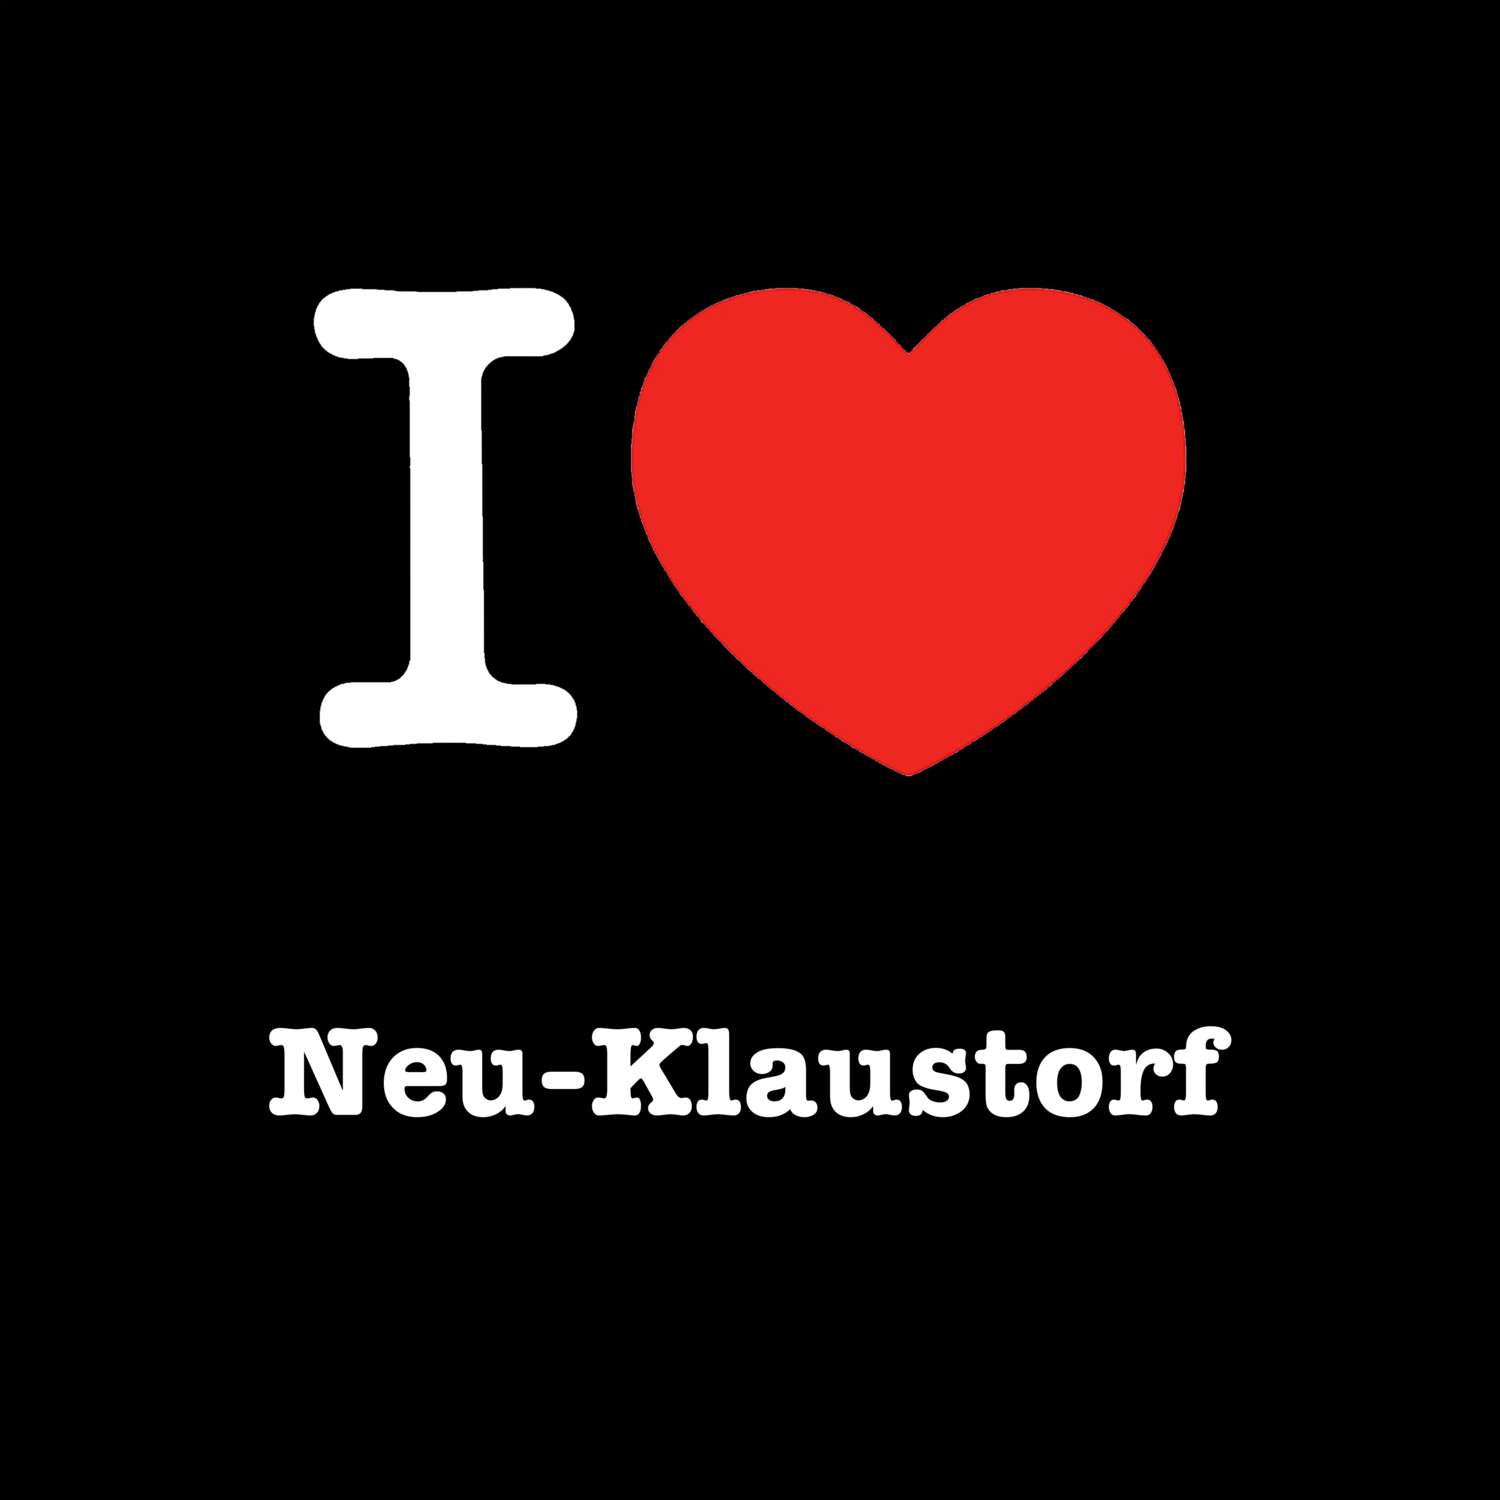 Neu-Klaustorf T-Shirt »I love«